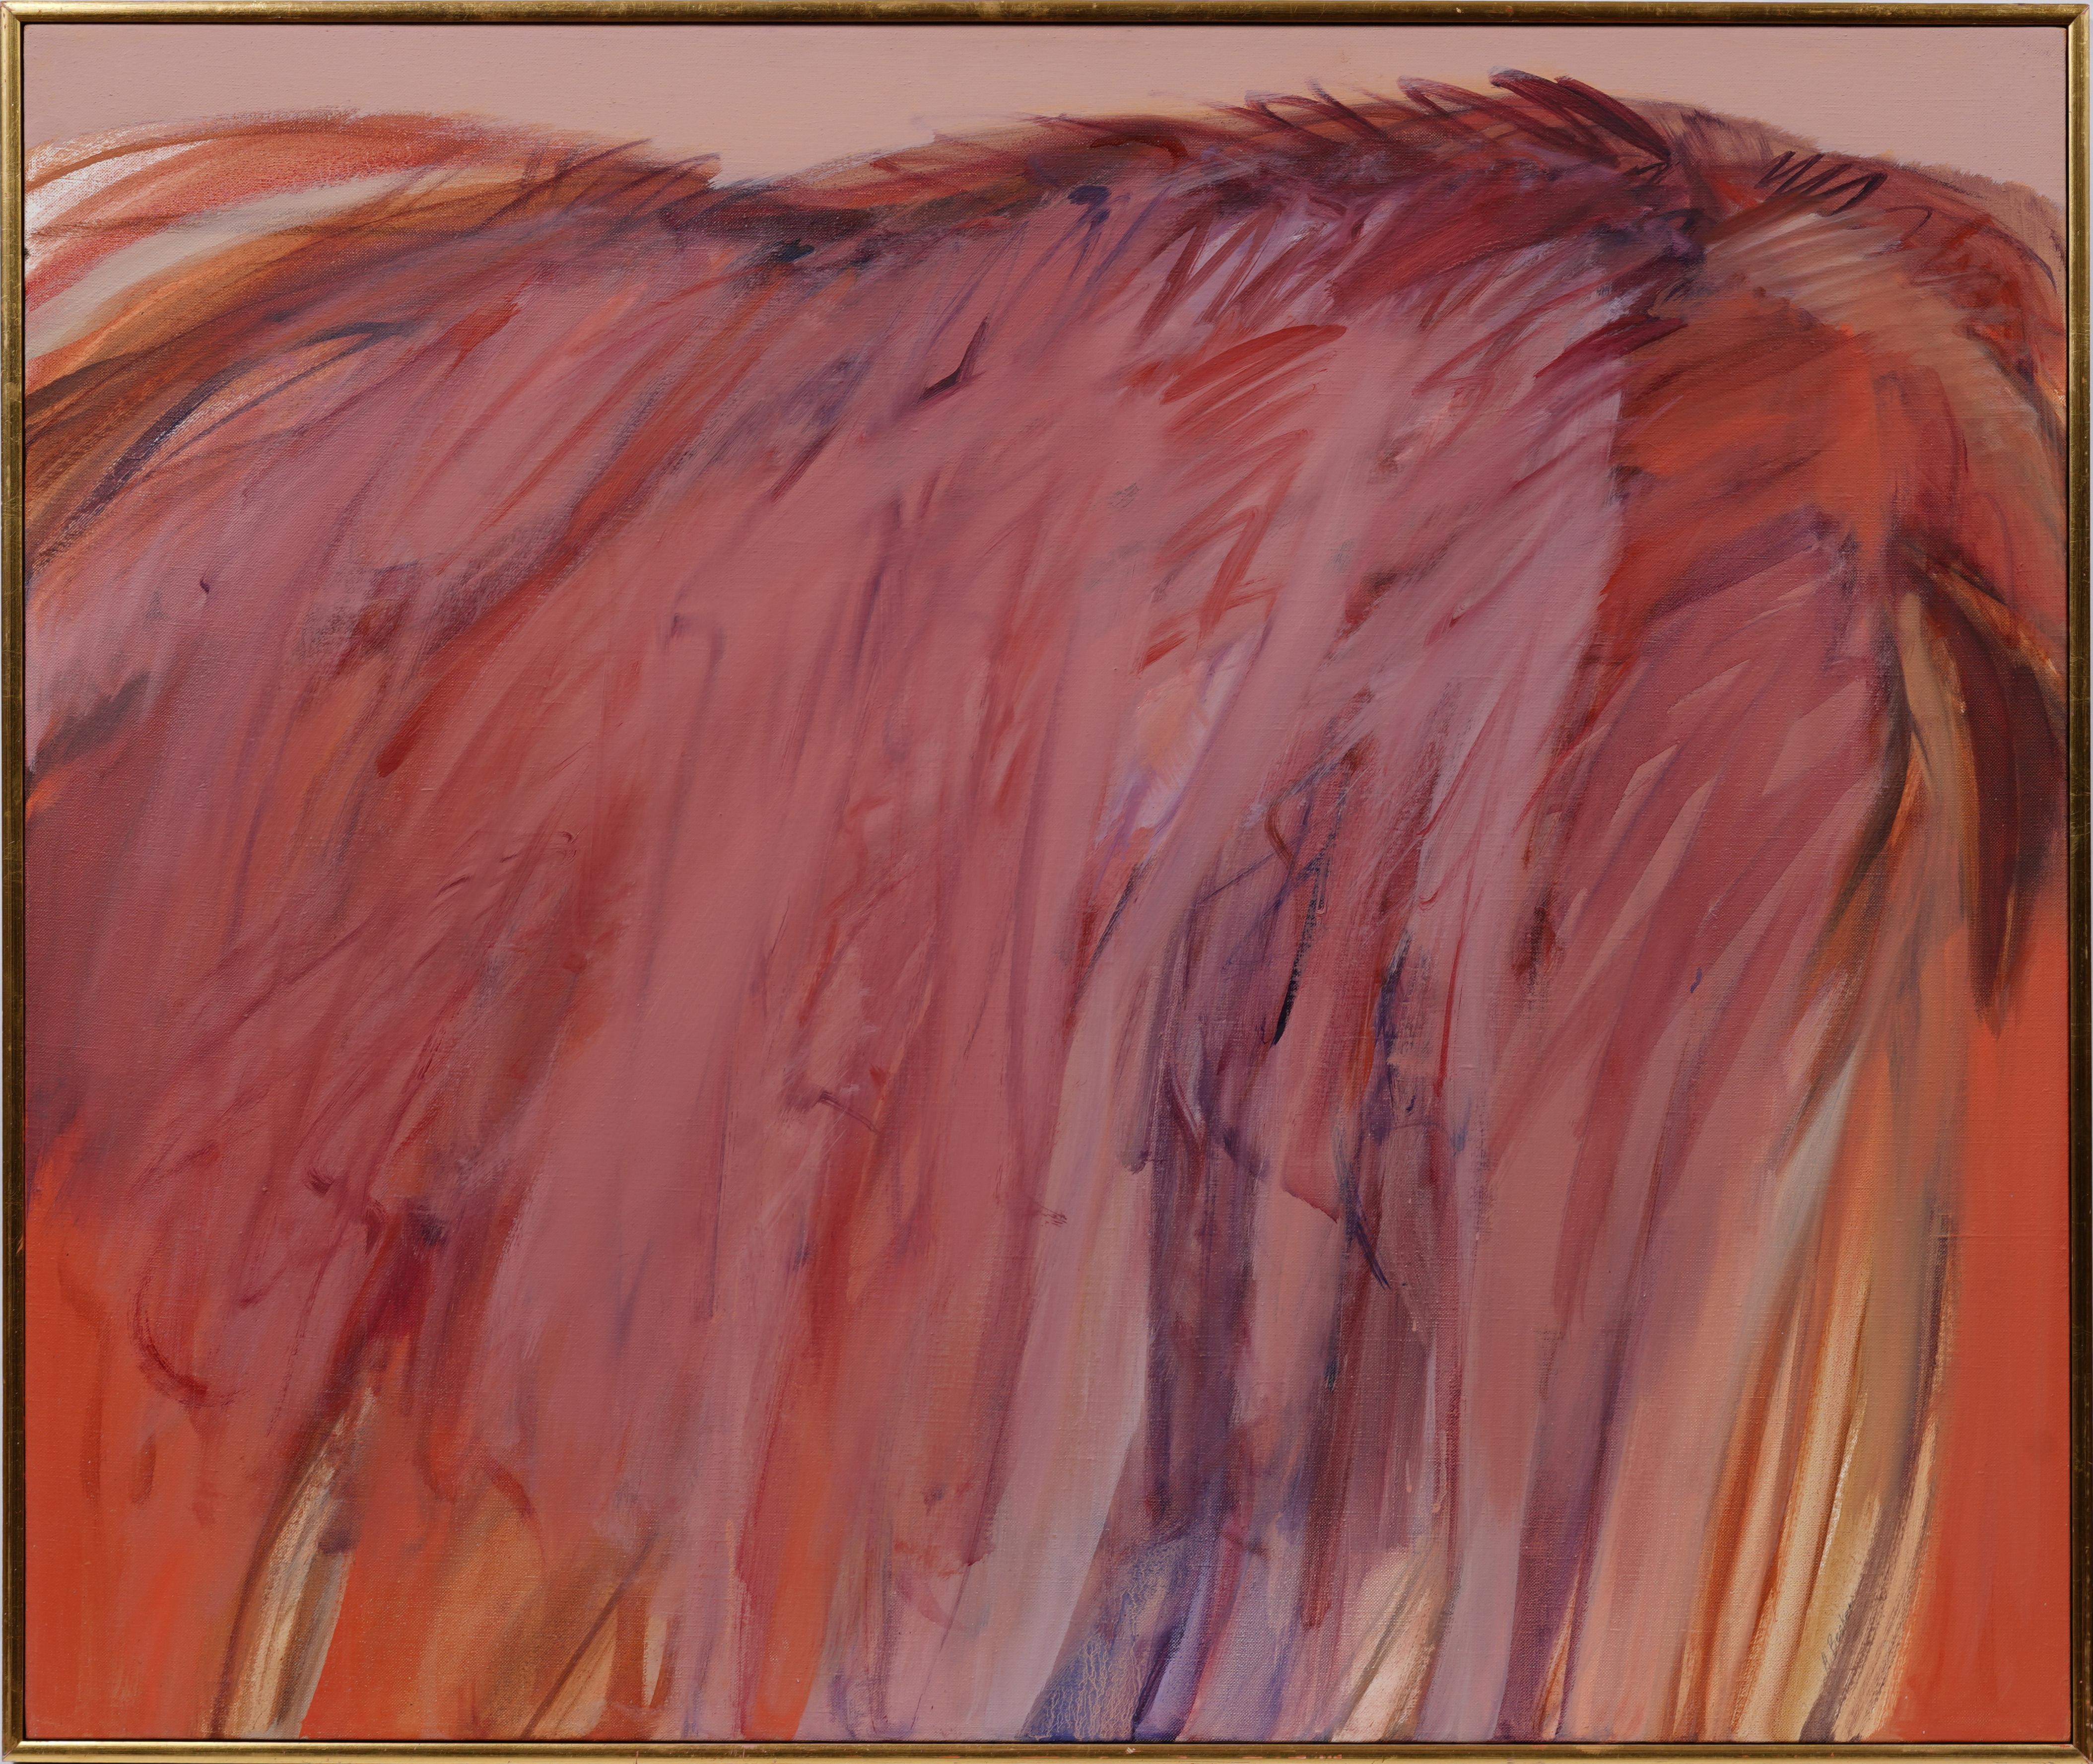 Abstract Painting Adele Becker - Ancienne peinture expressionniste abstraite américaine moderniste signée de la femme artiste